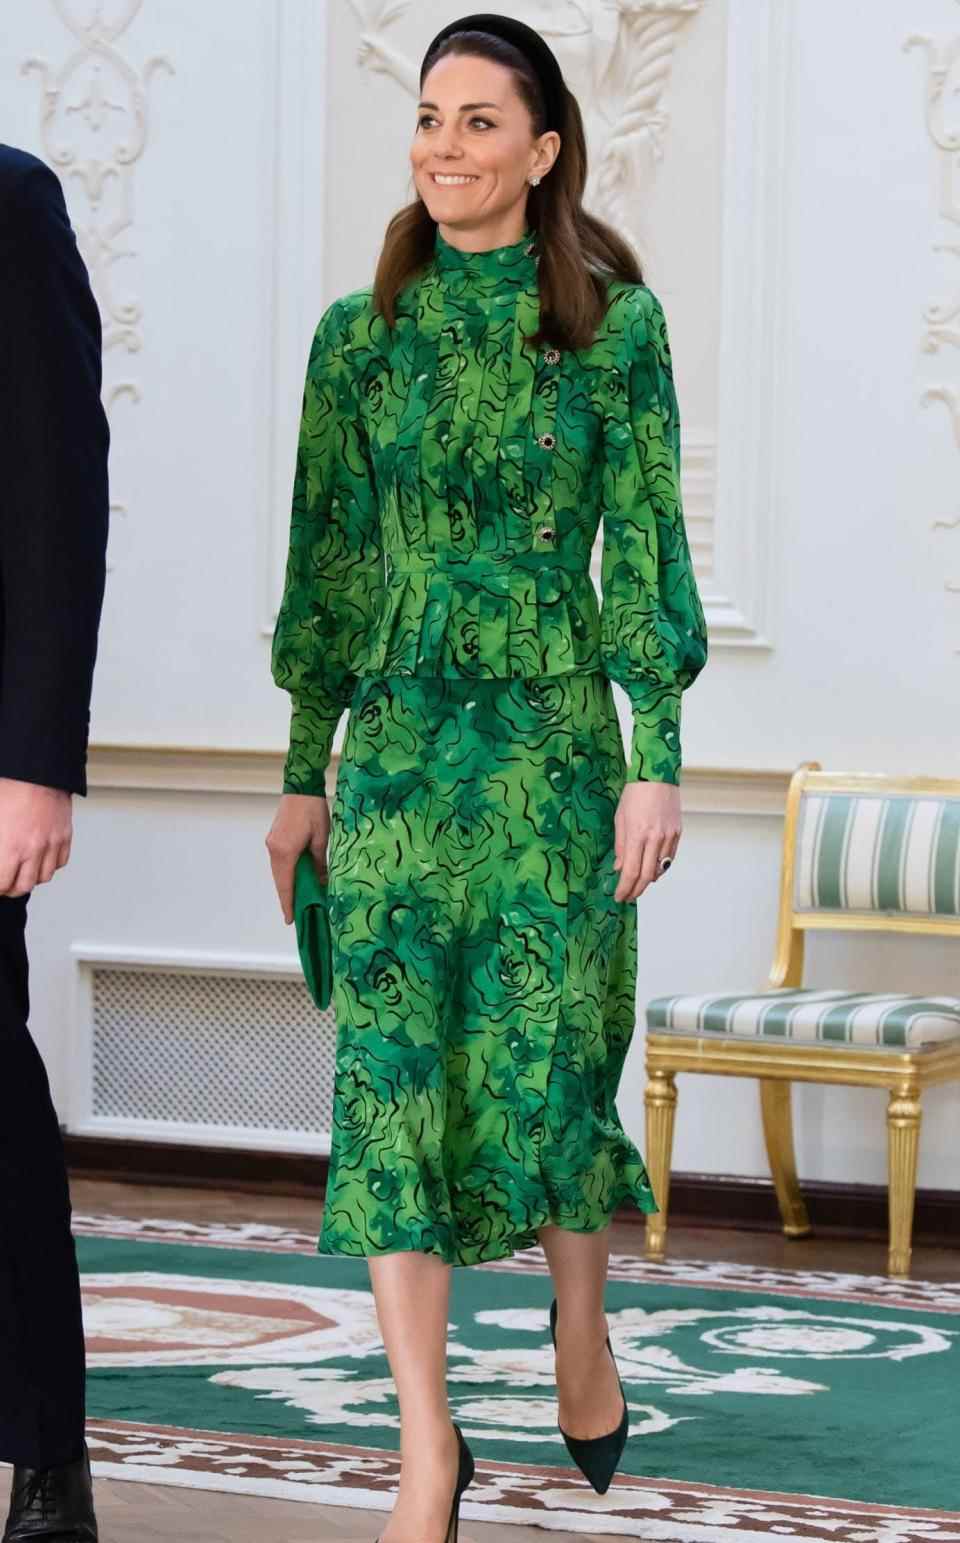 La duchesse de Cambridge portait une robe émeraude de Rich pour rencontrer le président irlandais - Samir Hussein 